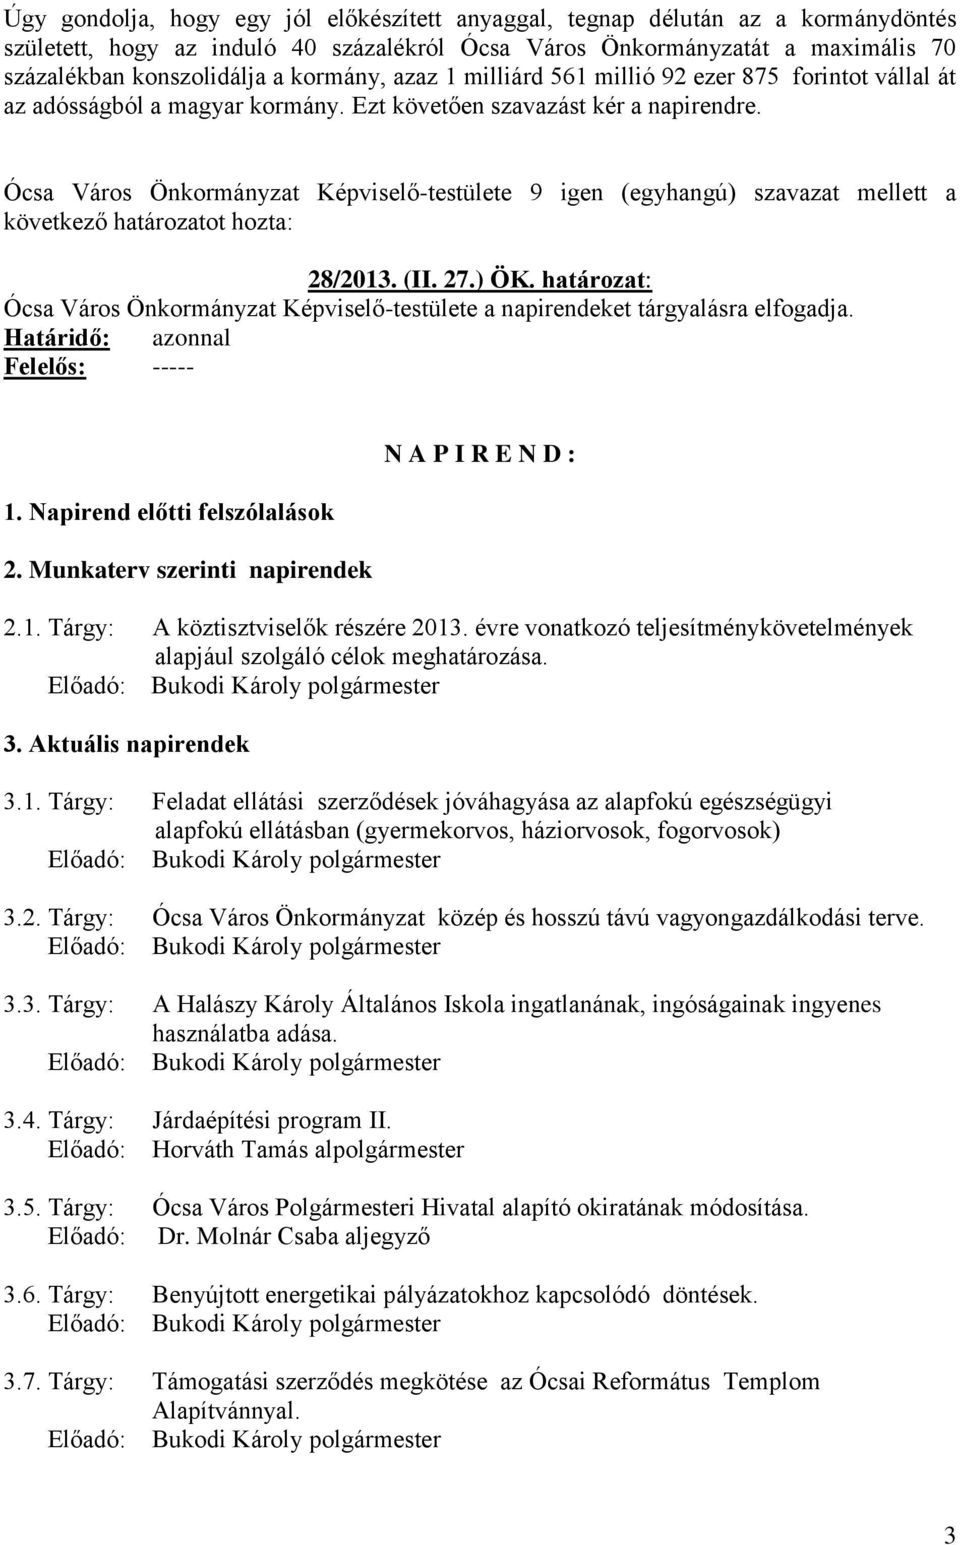 Ócsa Város Önkormányzat Képviselő-testülete 9 igen (egyhangú) szavazat mellett a 28/2013. (II. 27.) ÖK. határozat: Ócsa Város Önkormányzat Képviselő-testülete a napirendeket tárgyalásra elfogadja.